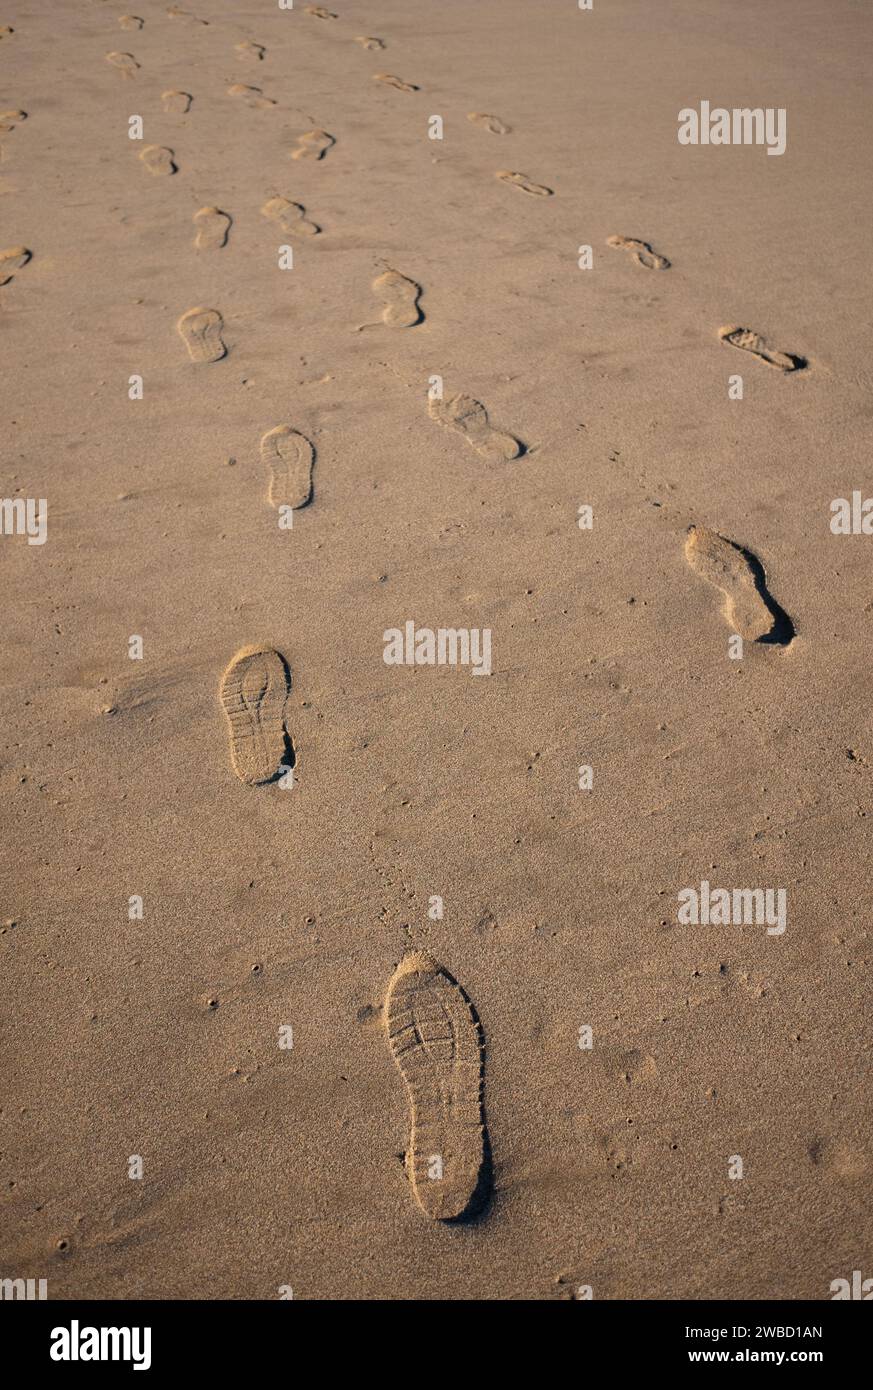 Empreintes de pas marquées dans le sable mou d'une plage, tracant des itinéraires qui se rencontrent et convergent, symbolisant le voyage et l'exploration. Banque D'Images